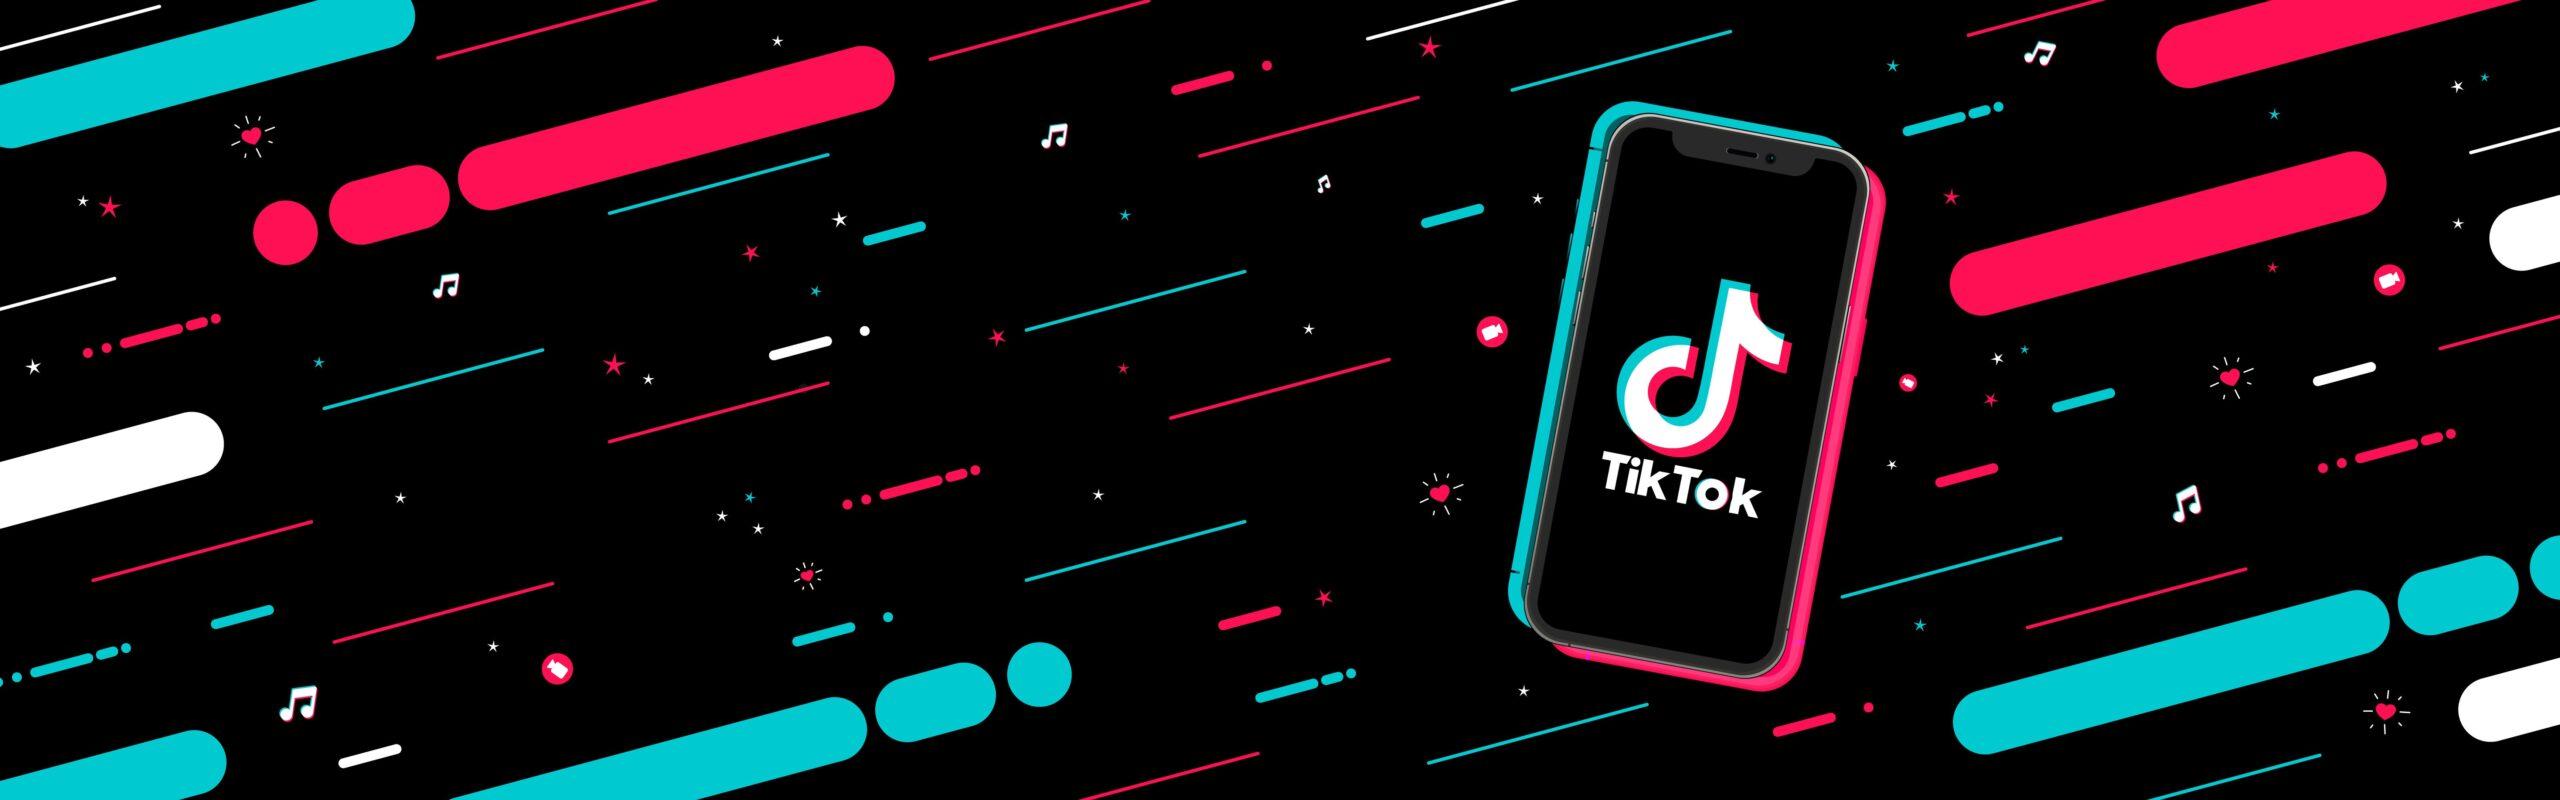 Tik Tok-Banner mit Copyspace. Logo auf dem Bildschirmtelefon mit einem modernen Muster bestehend aus farbigen Streifen auf dunklem Hintergrund. Vektorillustration.